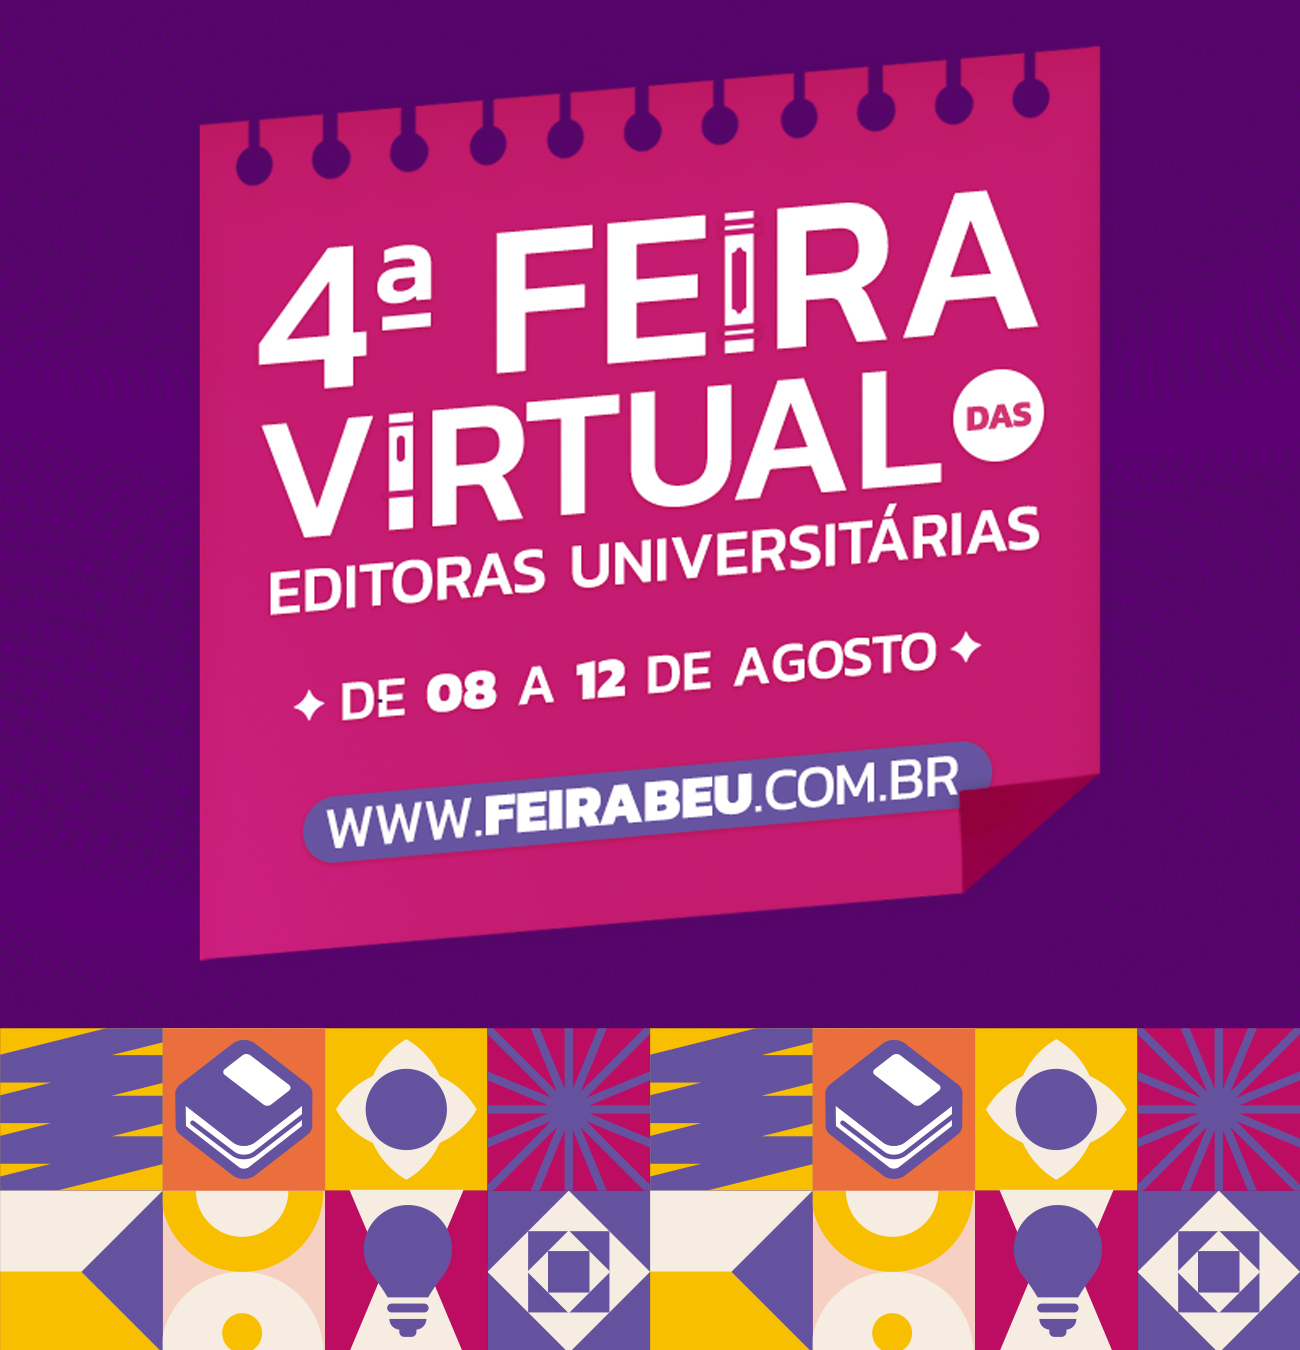 4ª Feira Virtual das Editoras Universitárias promovida pela ABEU.